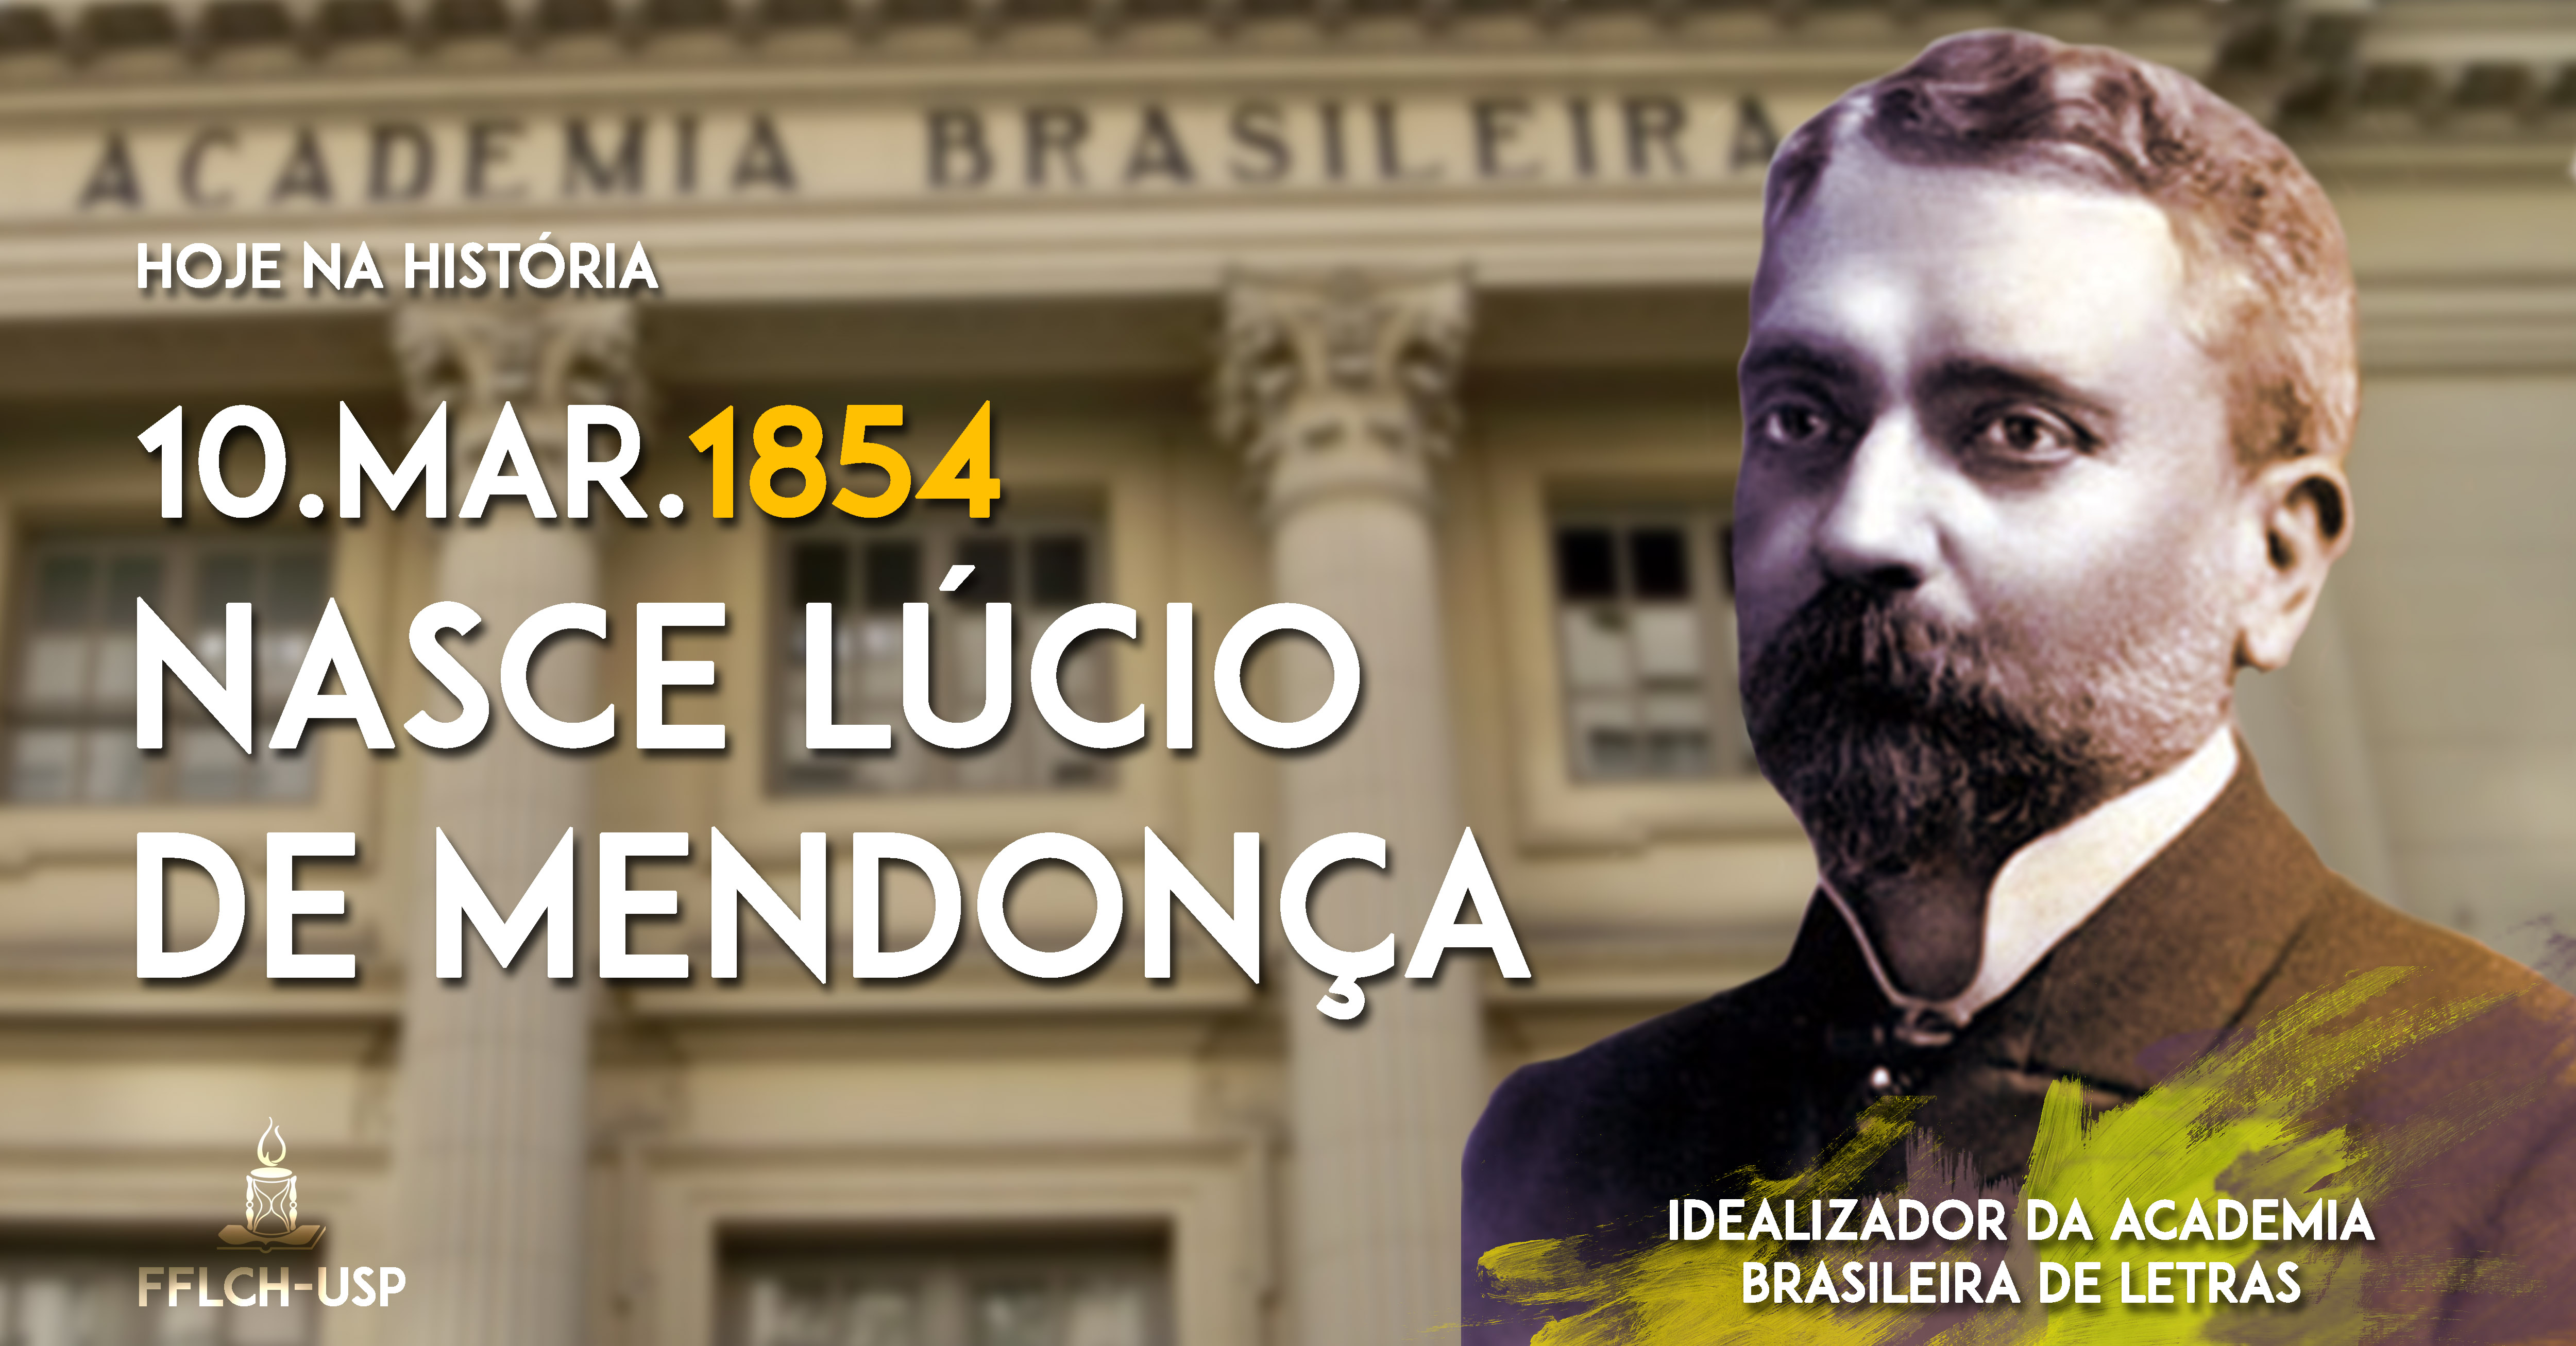 A Academia Brasileira de Letras (ABL), sediada no Rio de Janeiro foi inaugurada em 20 de julho de 1897. Seu objetivo é cultivar a língua e a literatura brasileira. (Arte: Renan Braz)